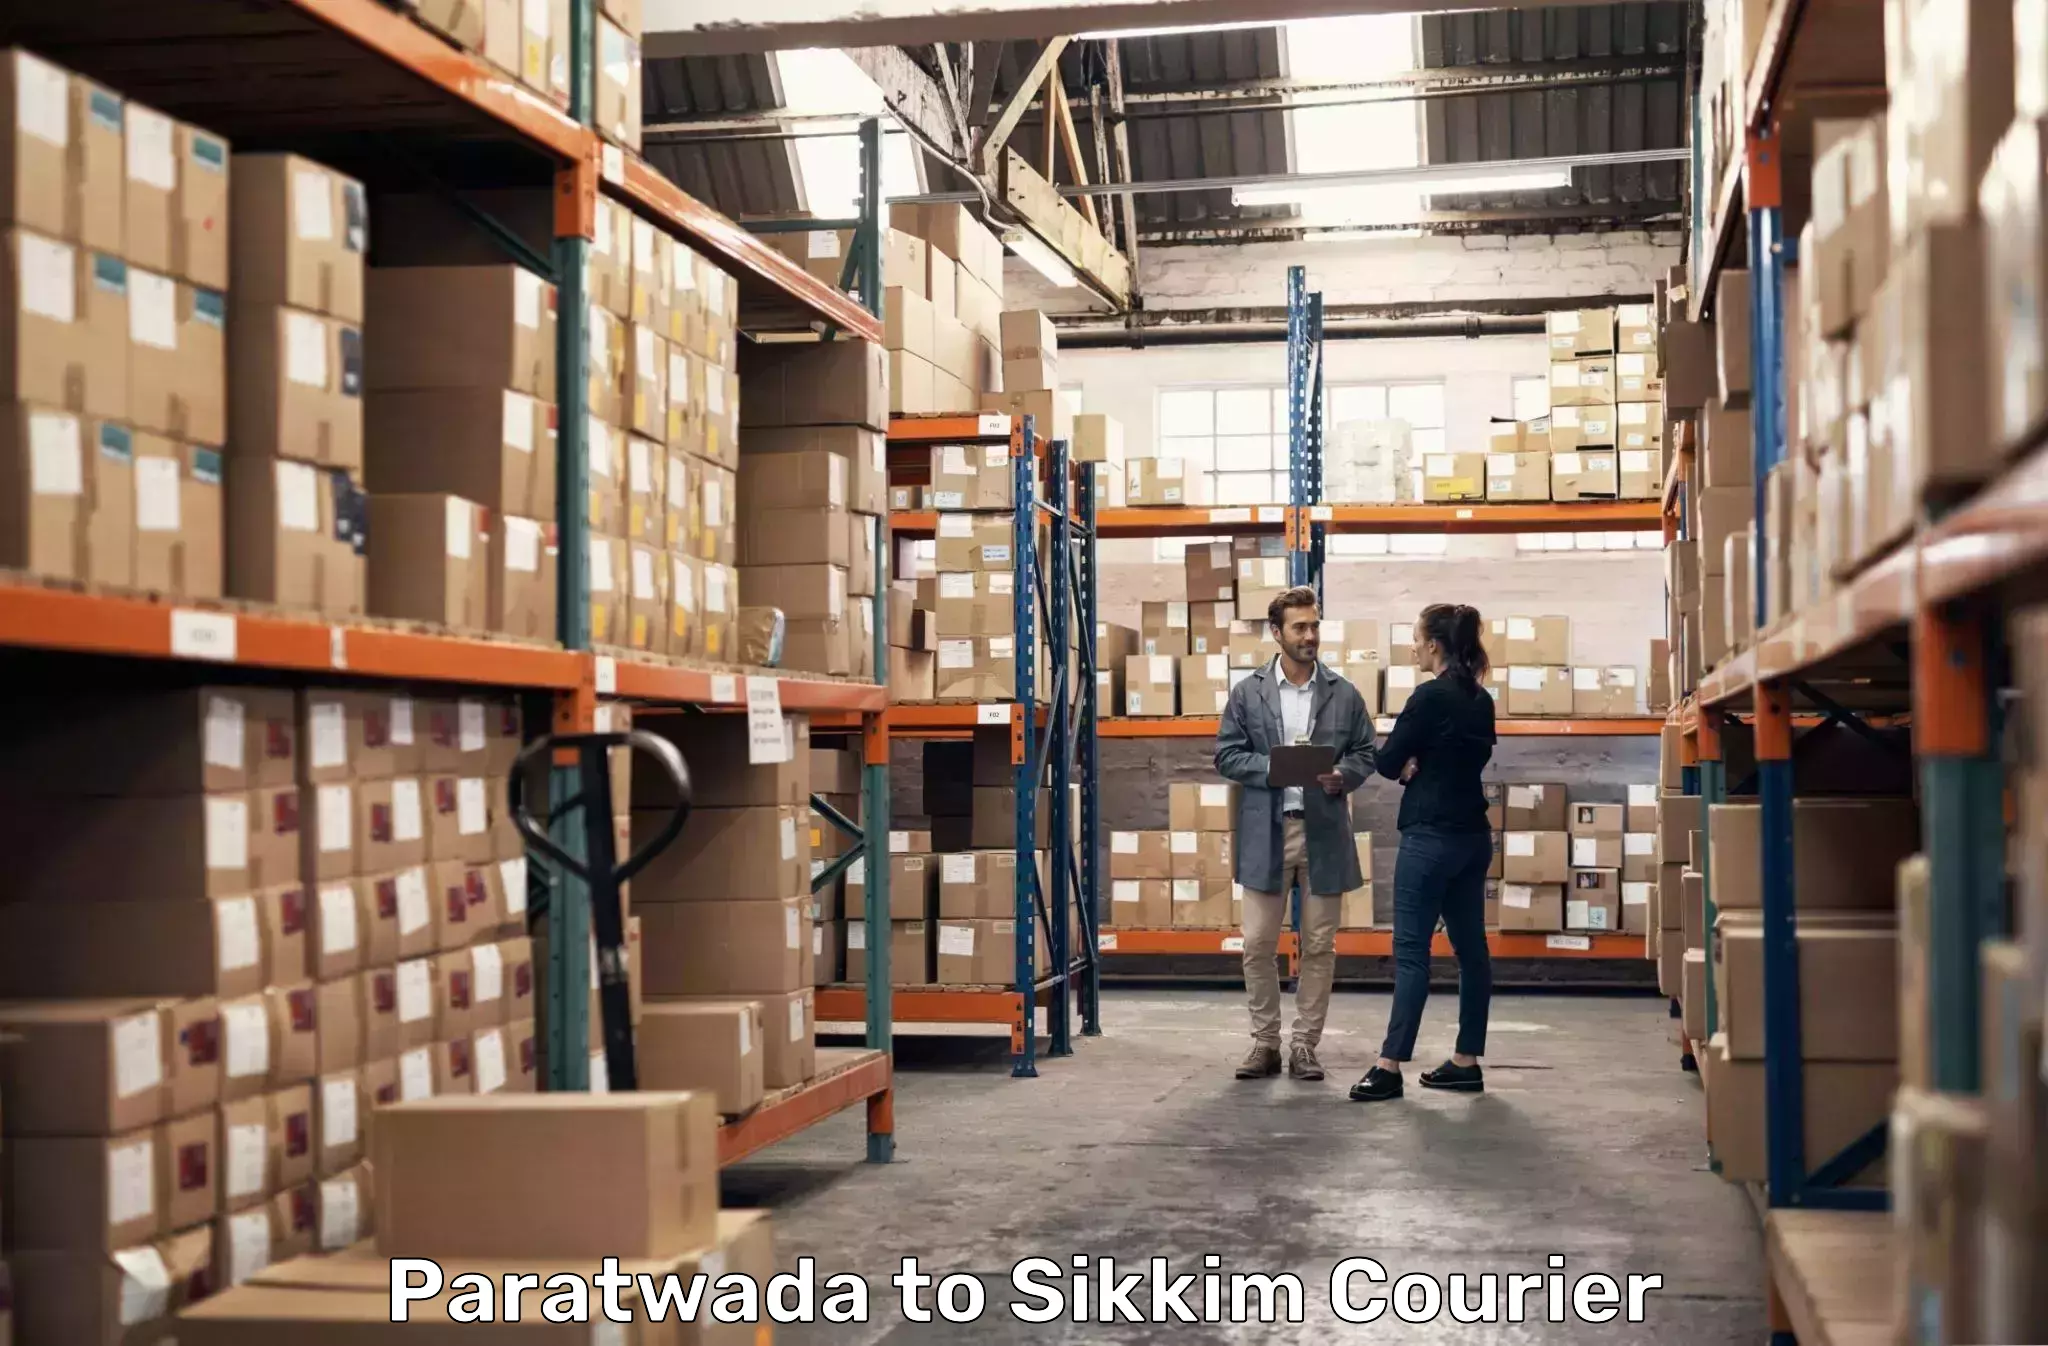 Courier service comparison Paratwada to Sikkim